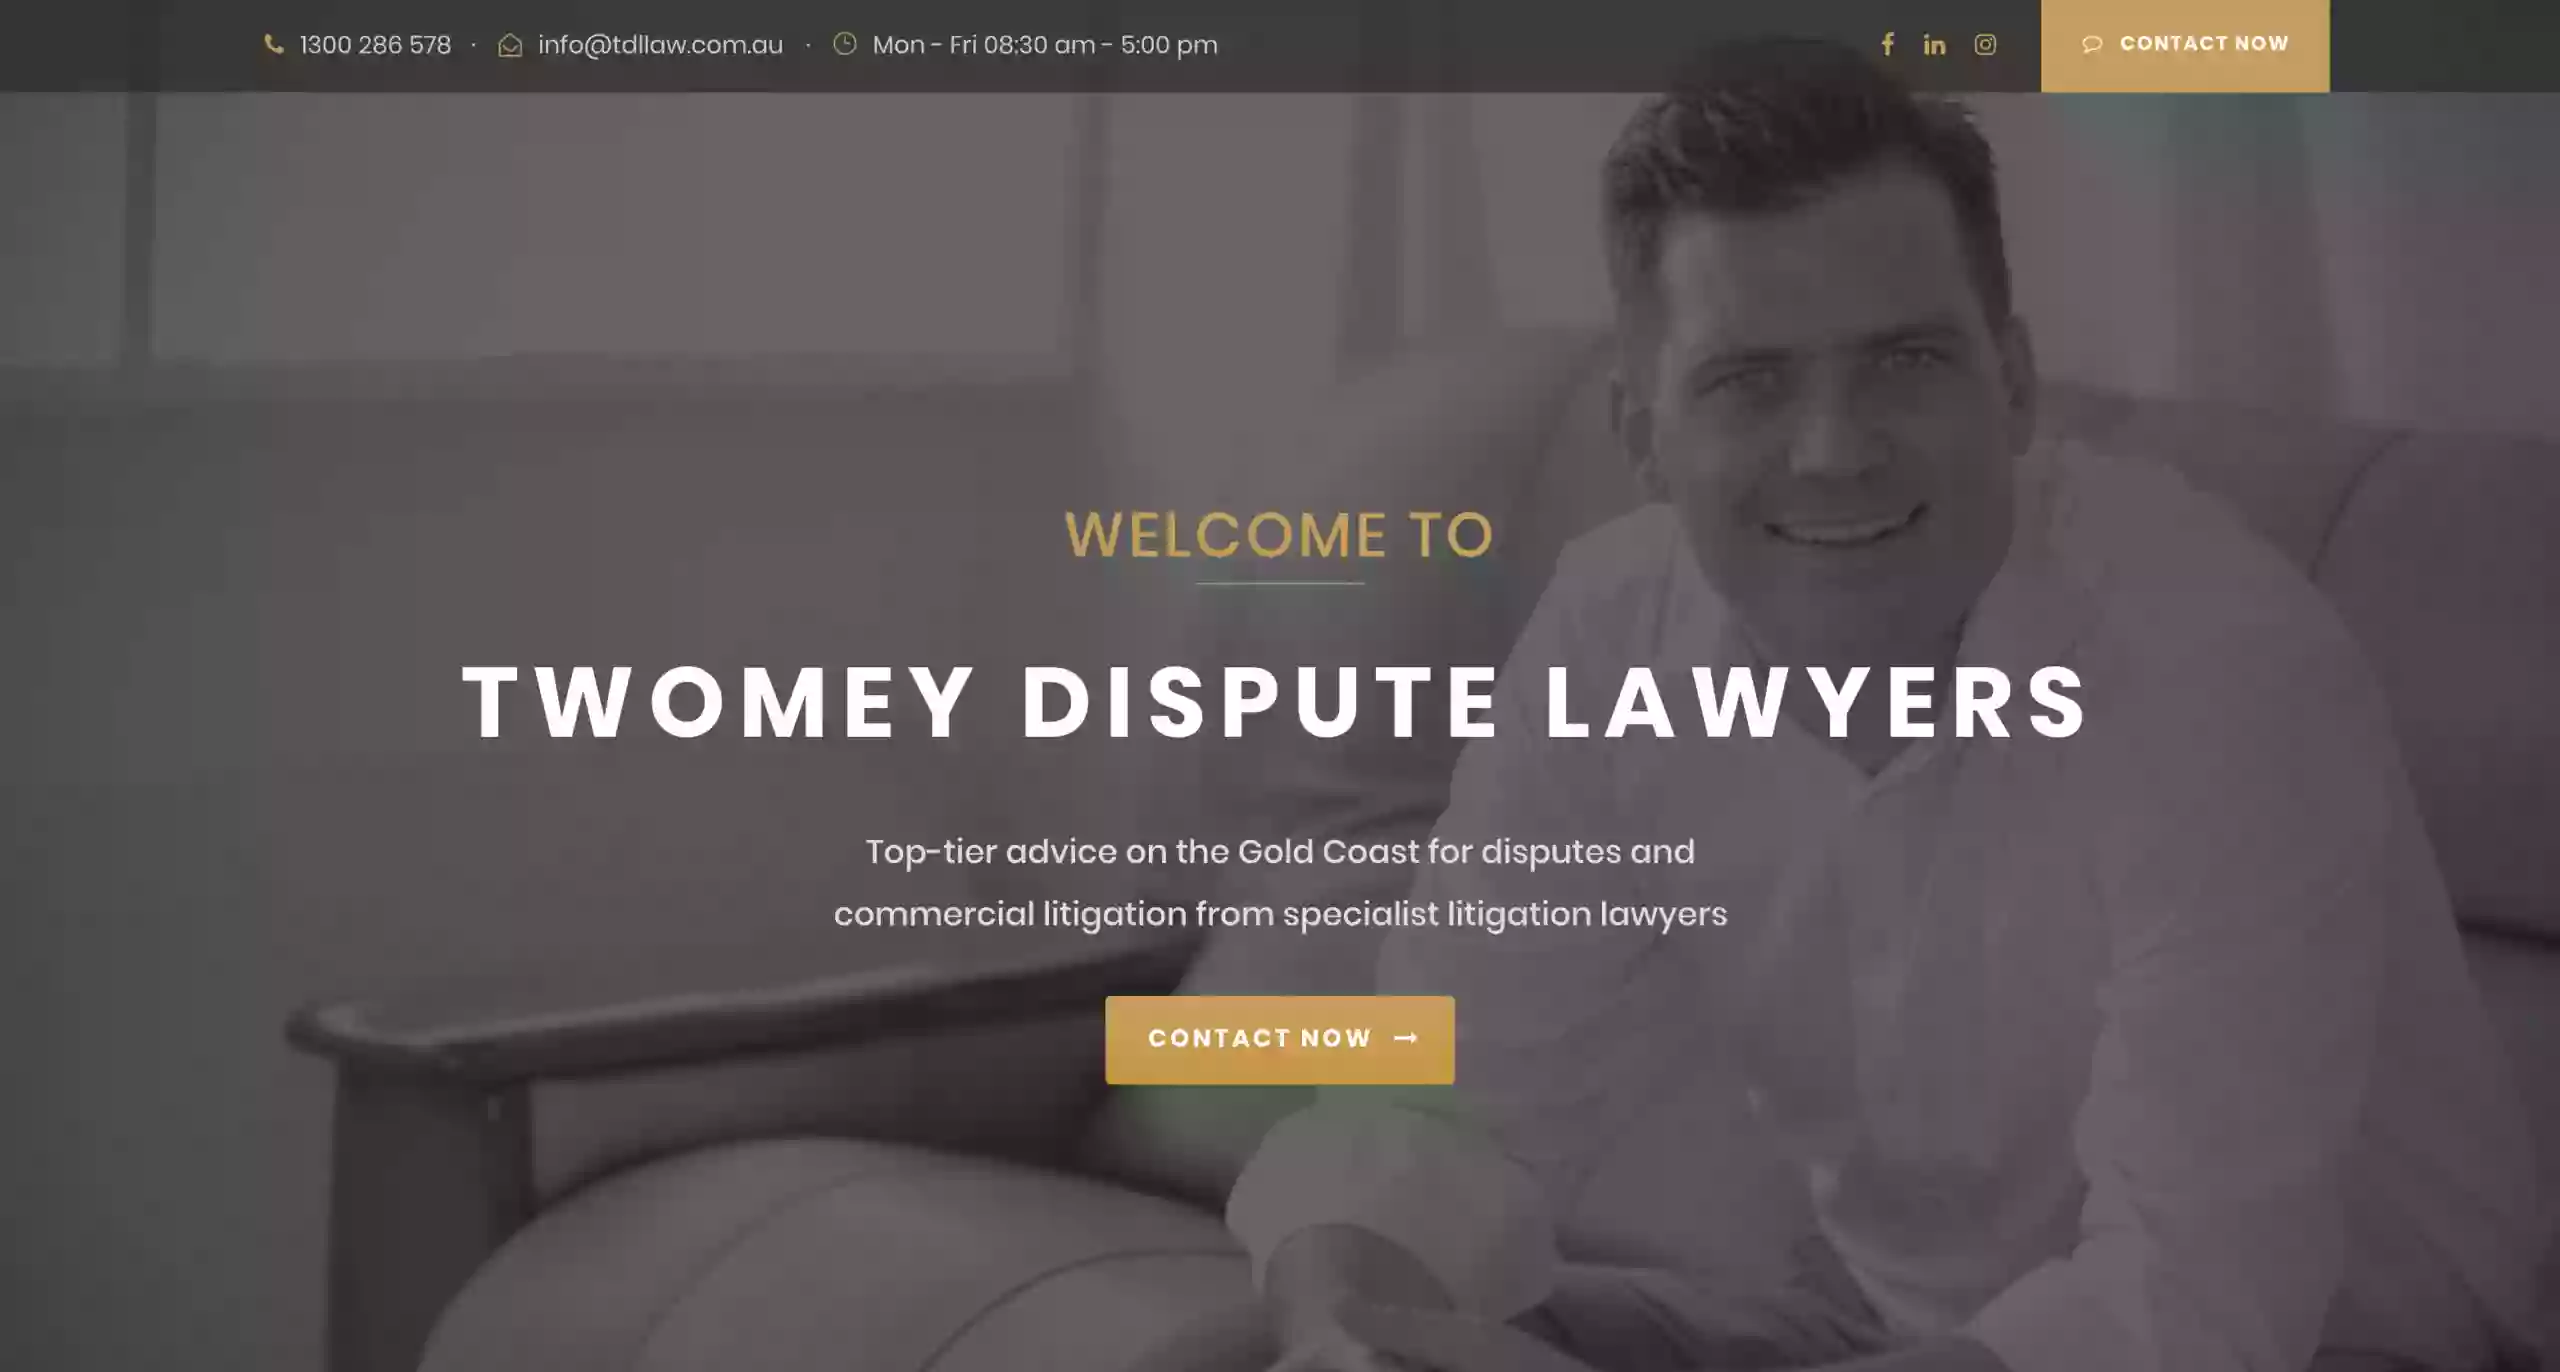 Twomey Dispute Lawyers